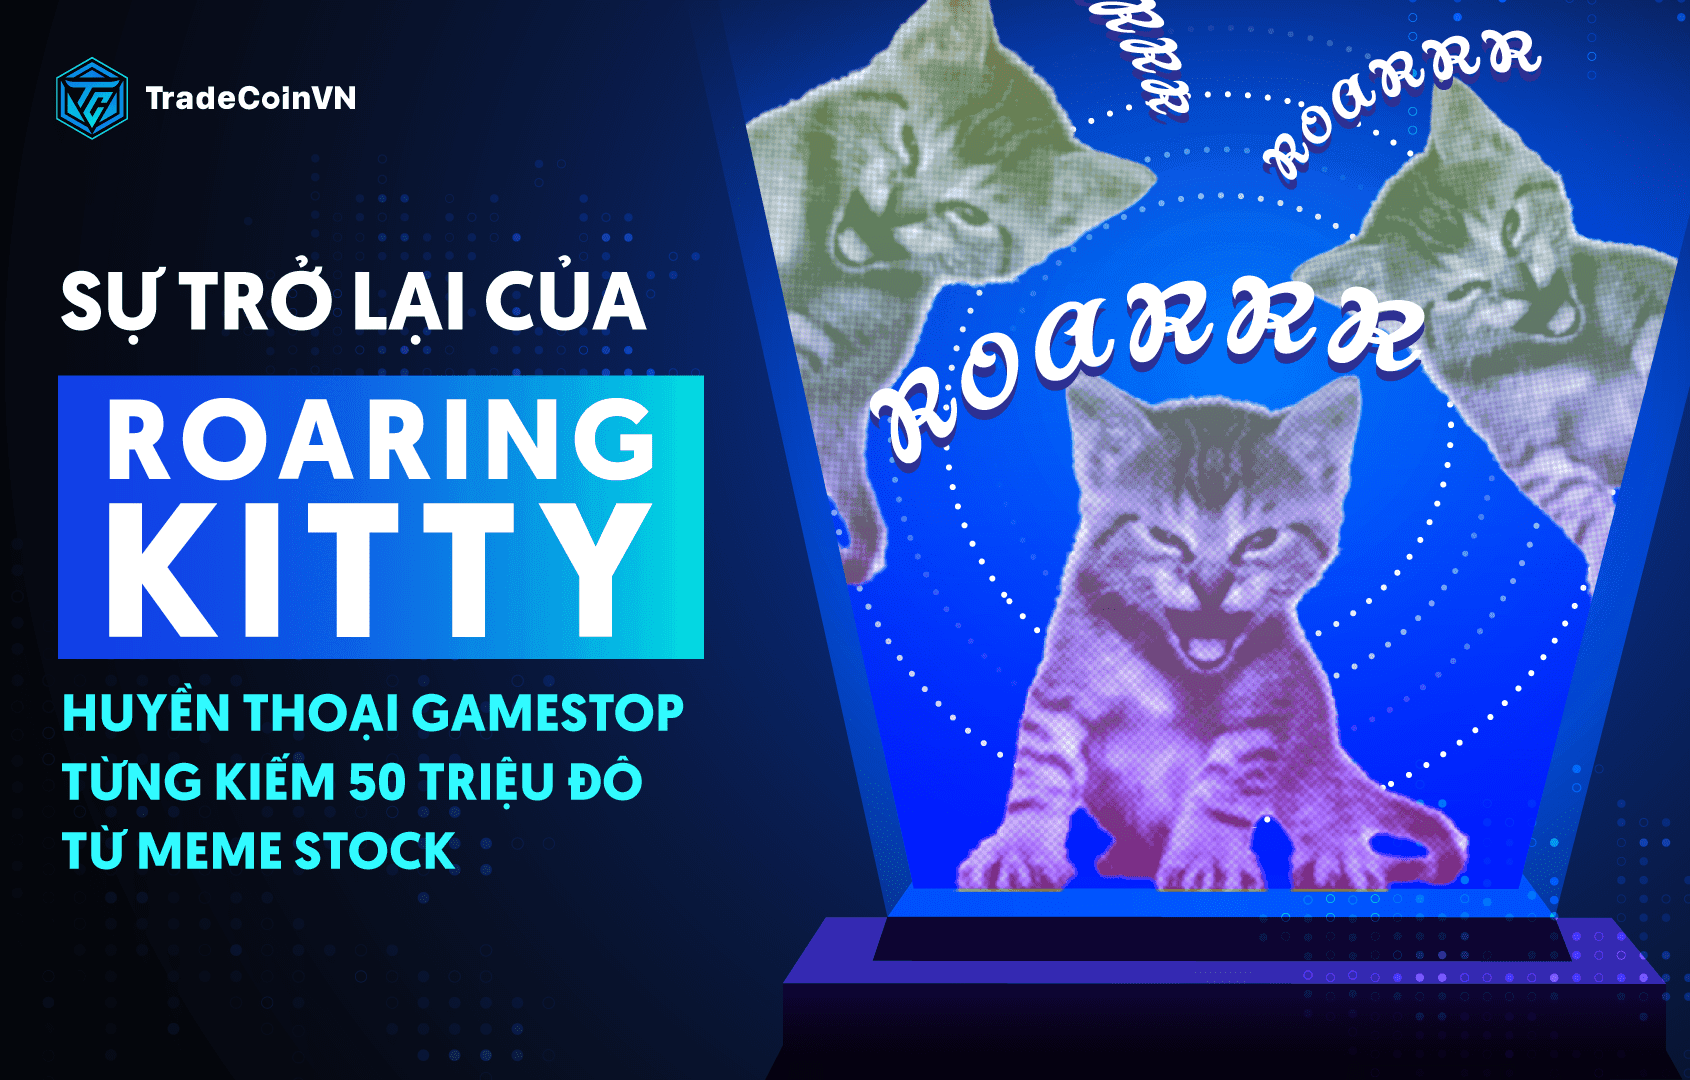 Học được gì từ sự trở lại của Roaring Kitty - Huyền thoại GameStop từng kiếm 50 triệu đô từ meme stock